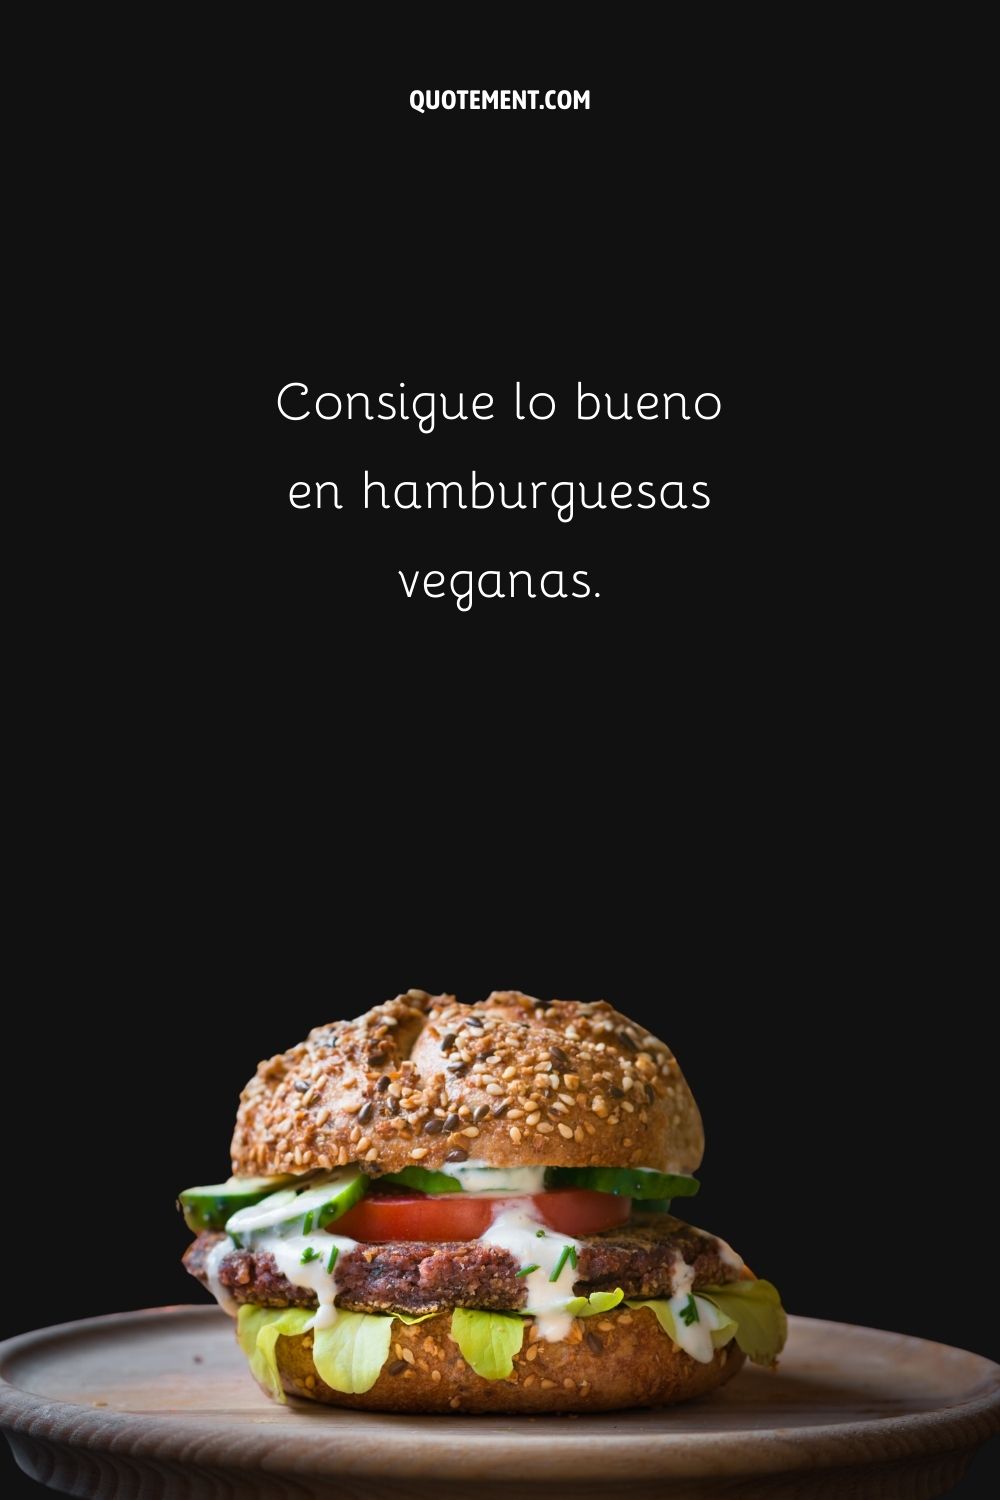 Consigue lo bueno en hamburguesas veganas.